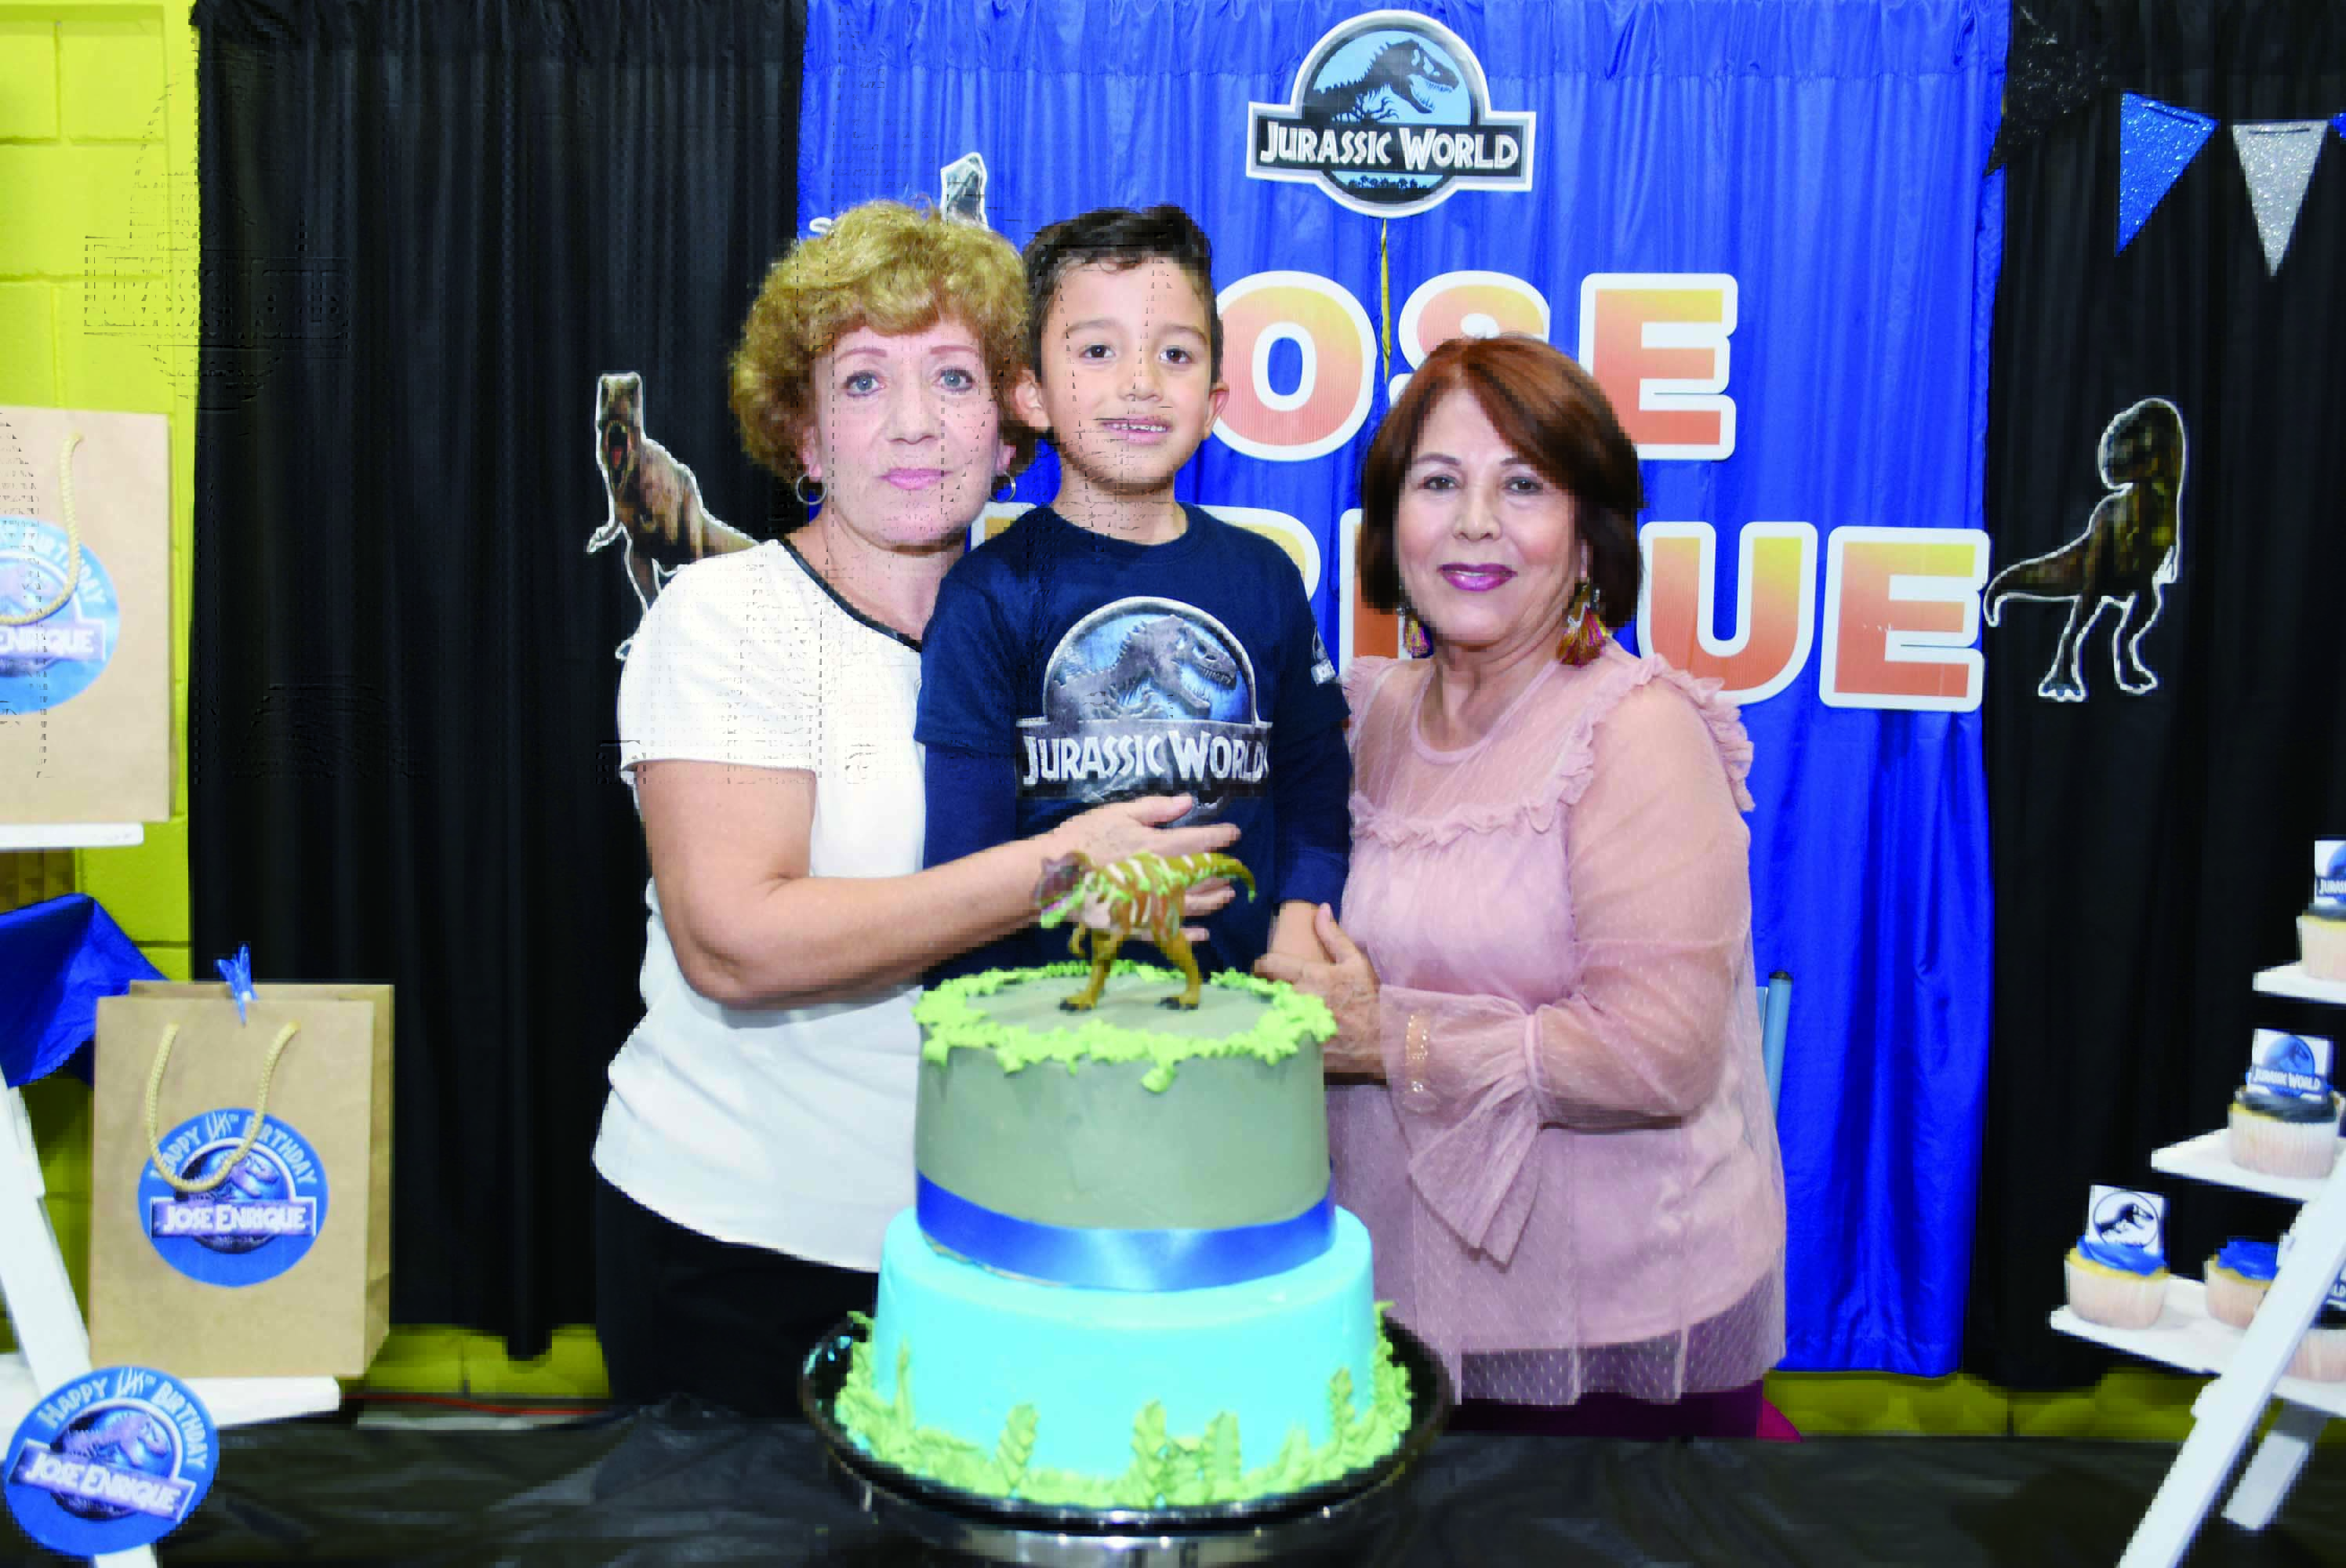 José Enrique festeja sus siete años con gran fiesta